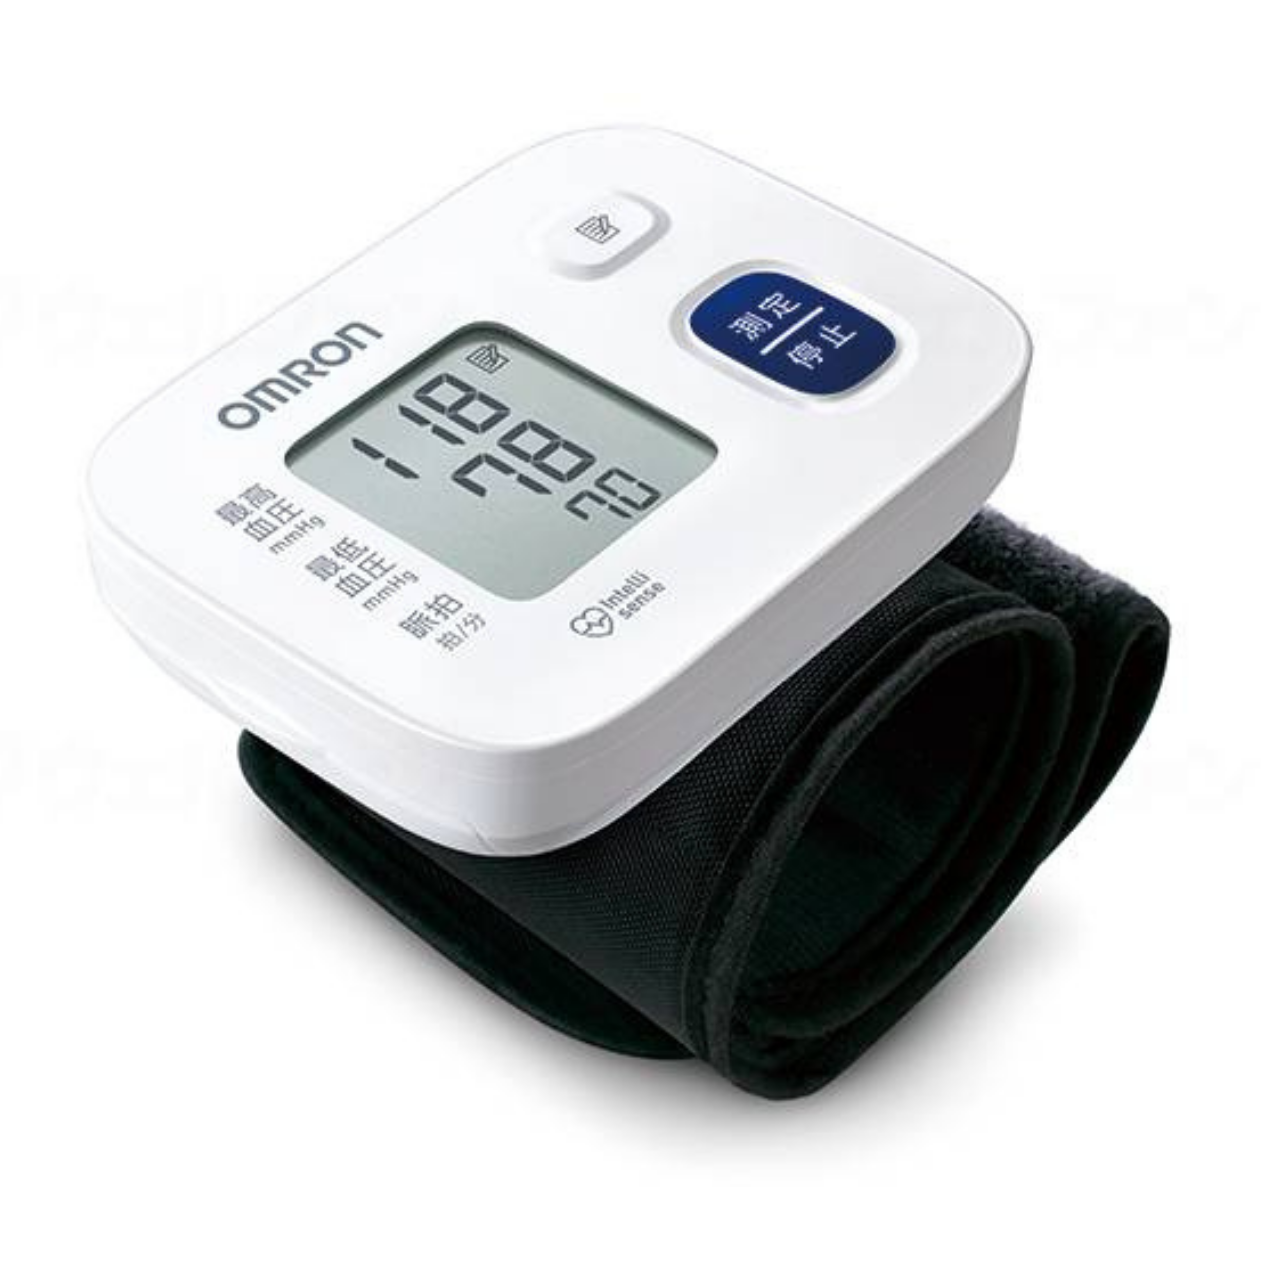 手首式血圧計